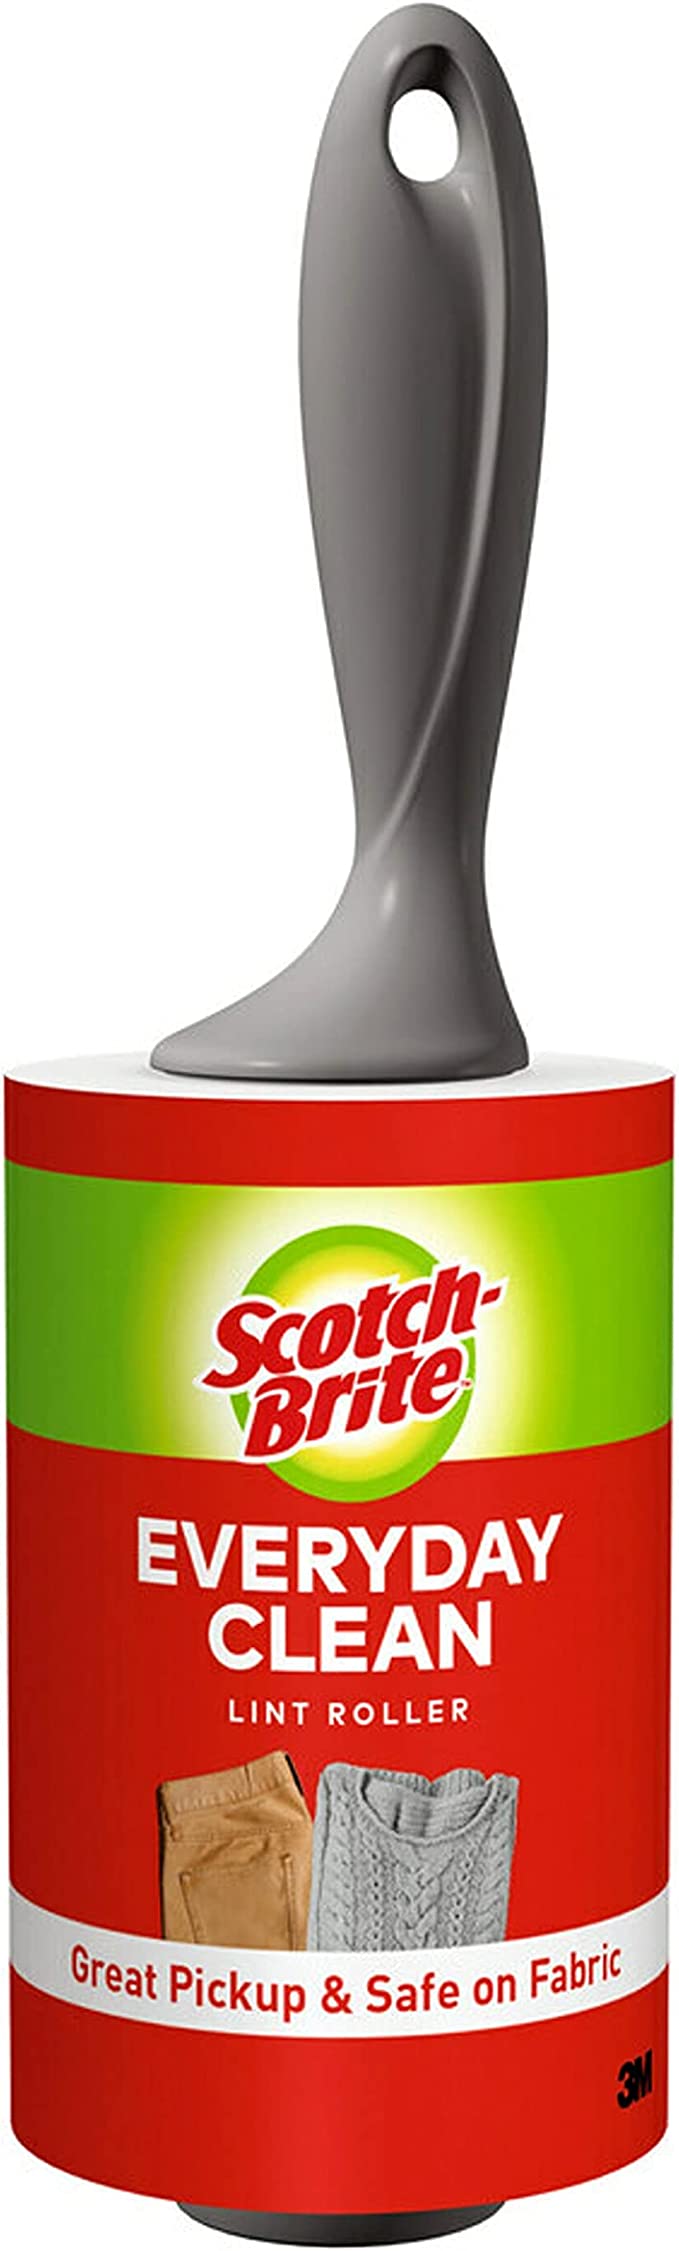 Scotch-Brite Lint Roller, 1 Roller, 100 Sheets